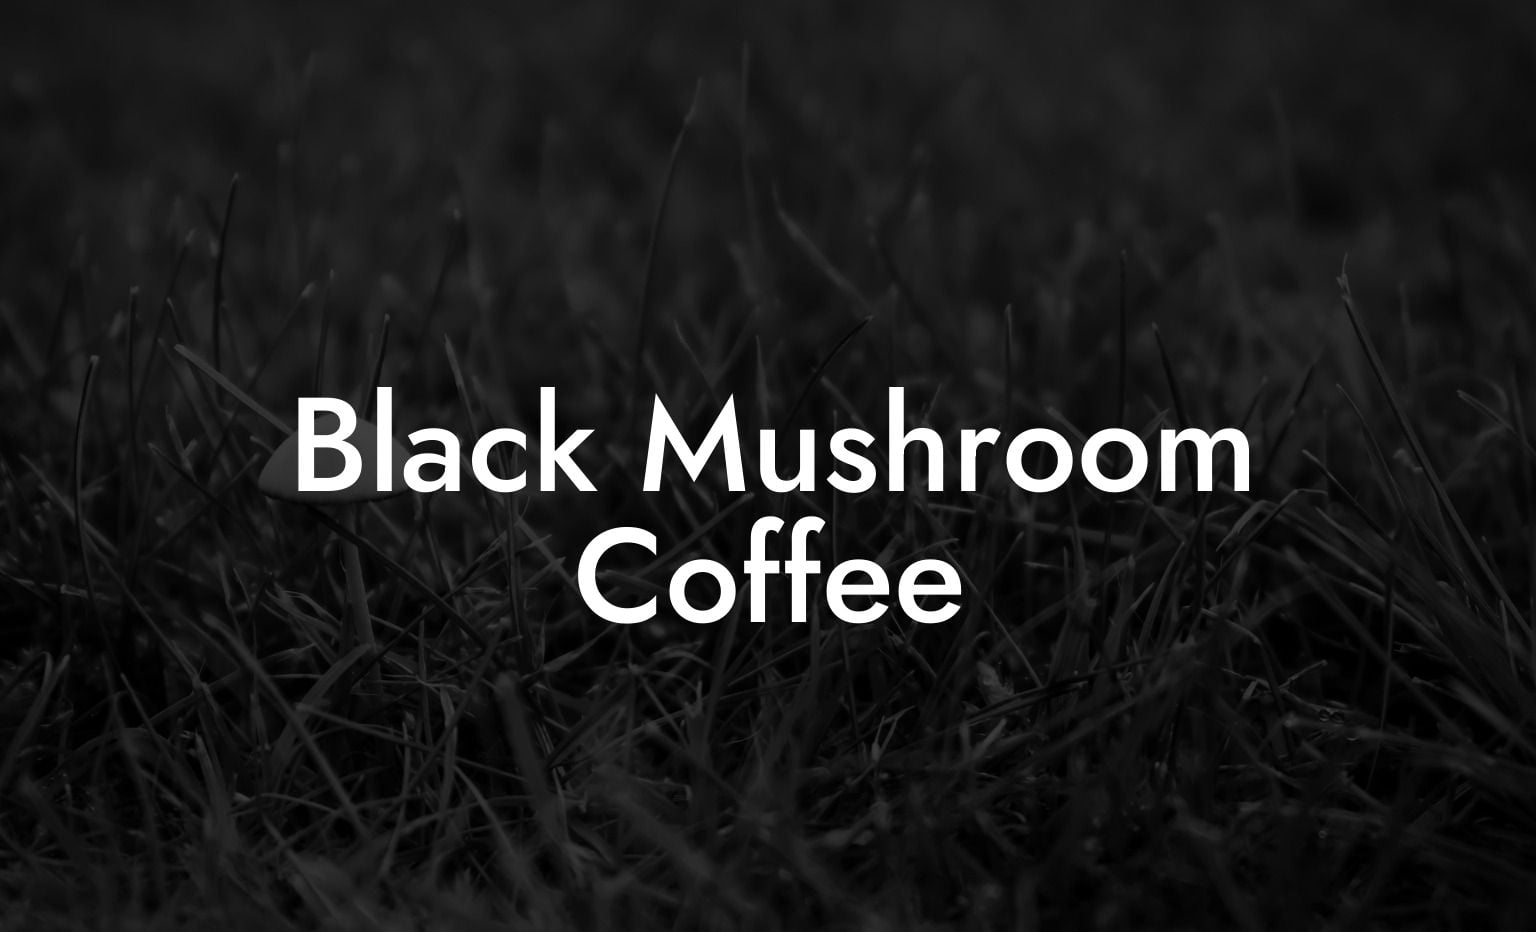 Black Mushroom Coffee